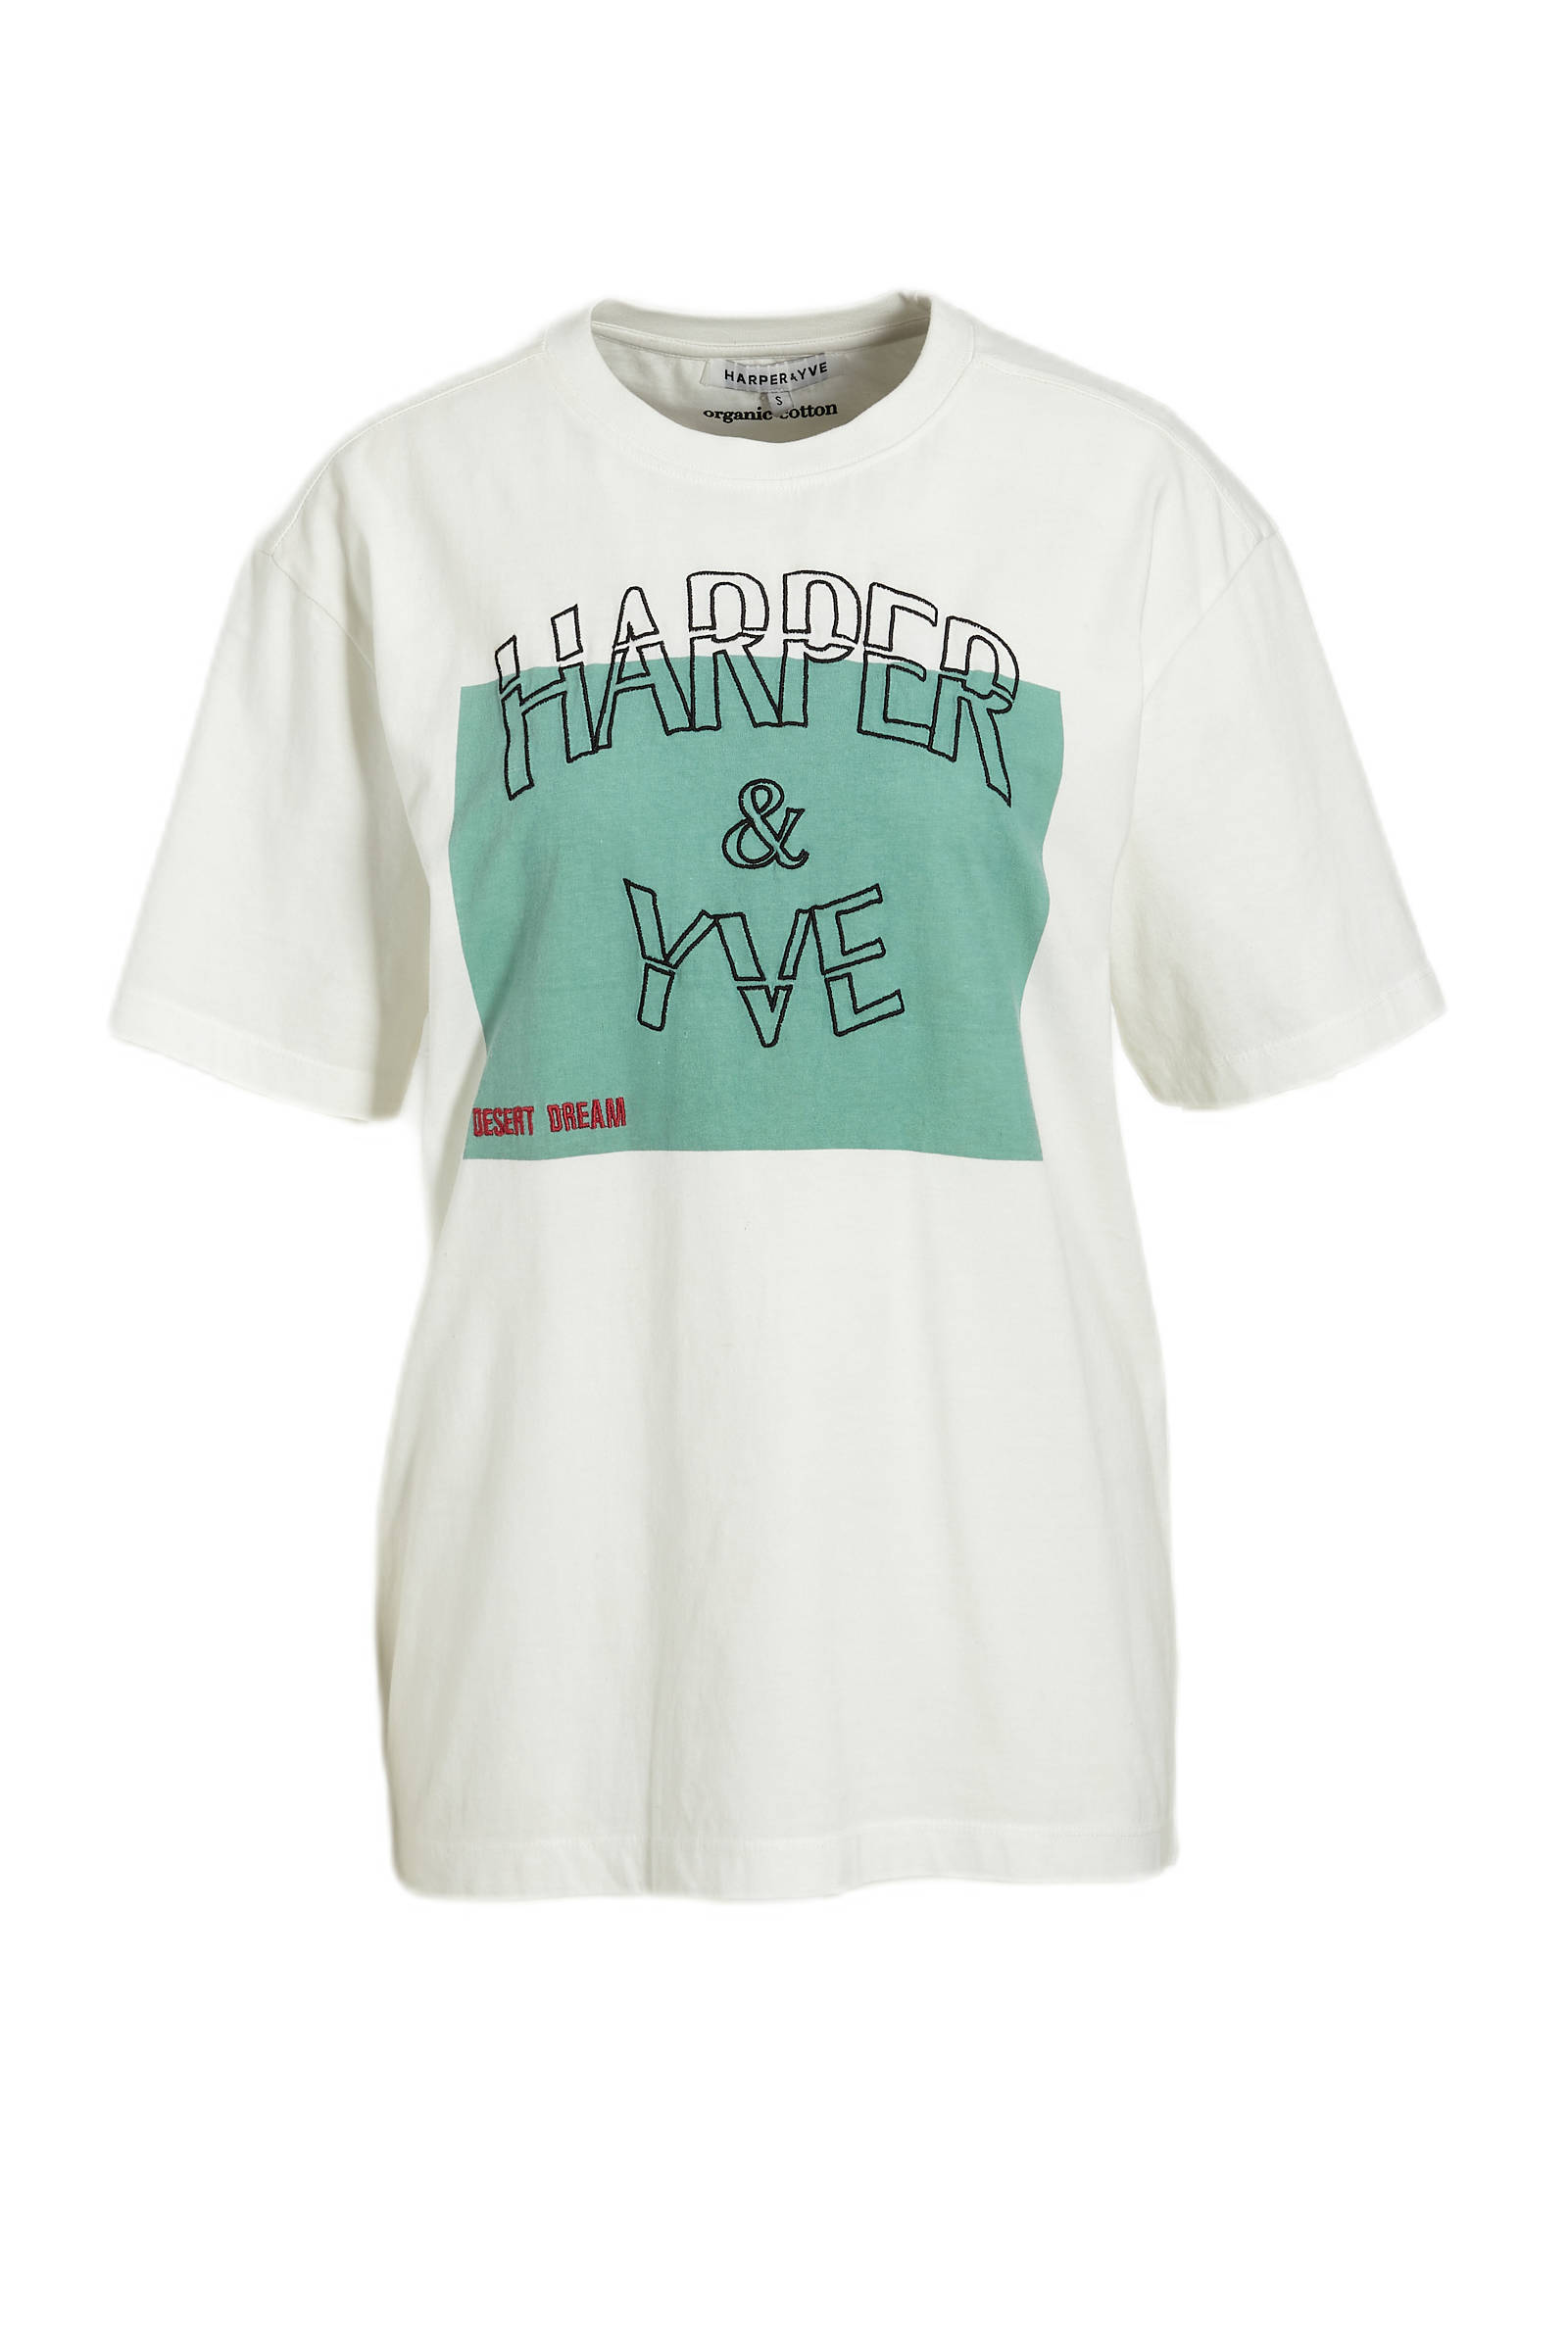 Harper Boven Kleding Dameskleding Tops & T-shirts Blouses 